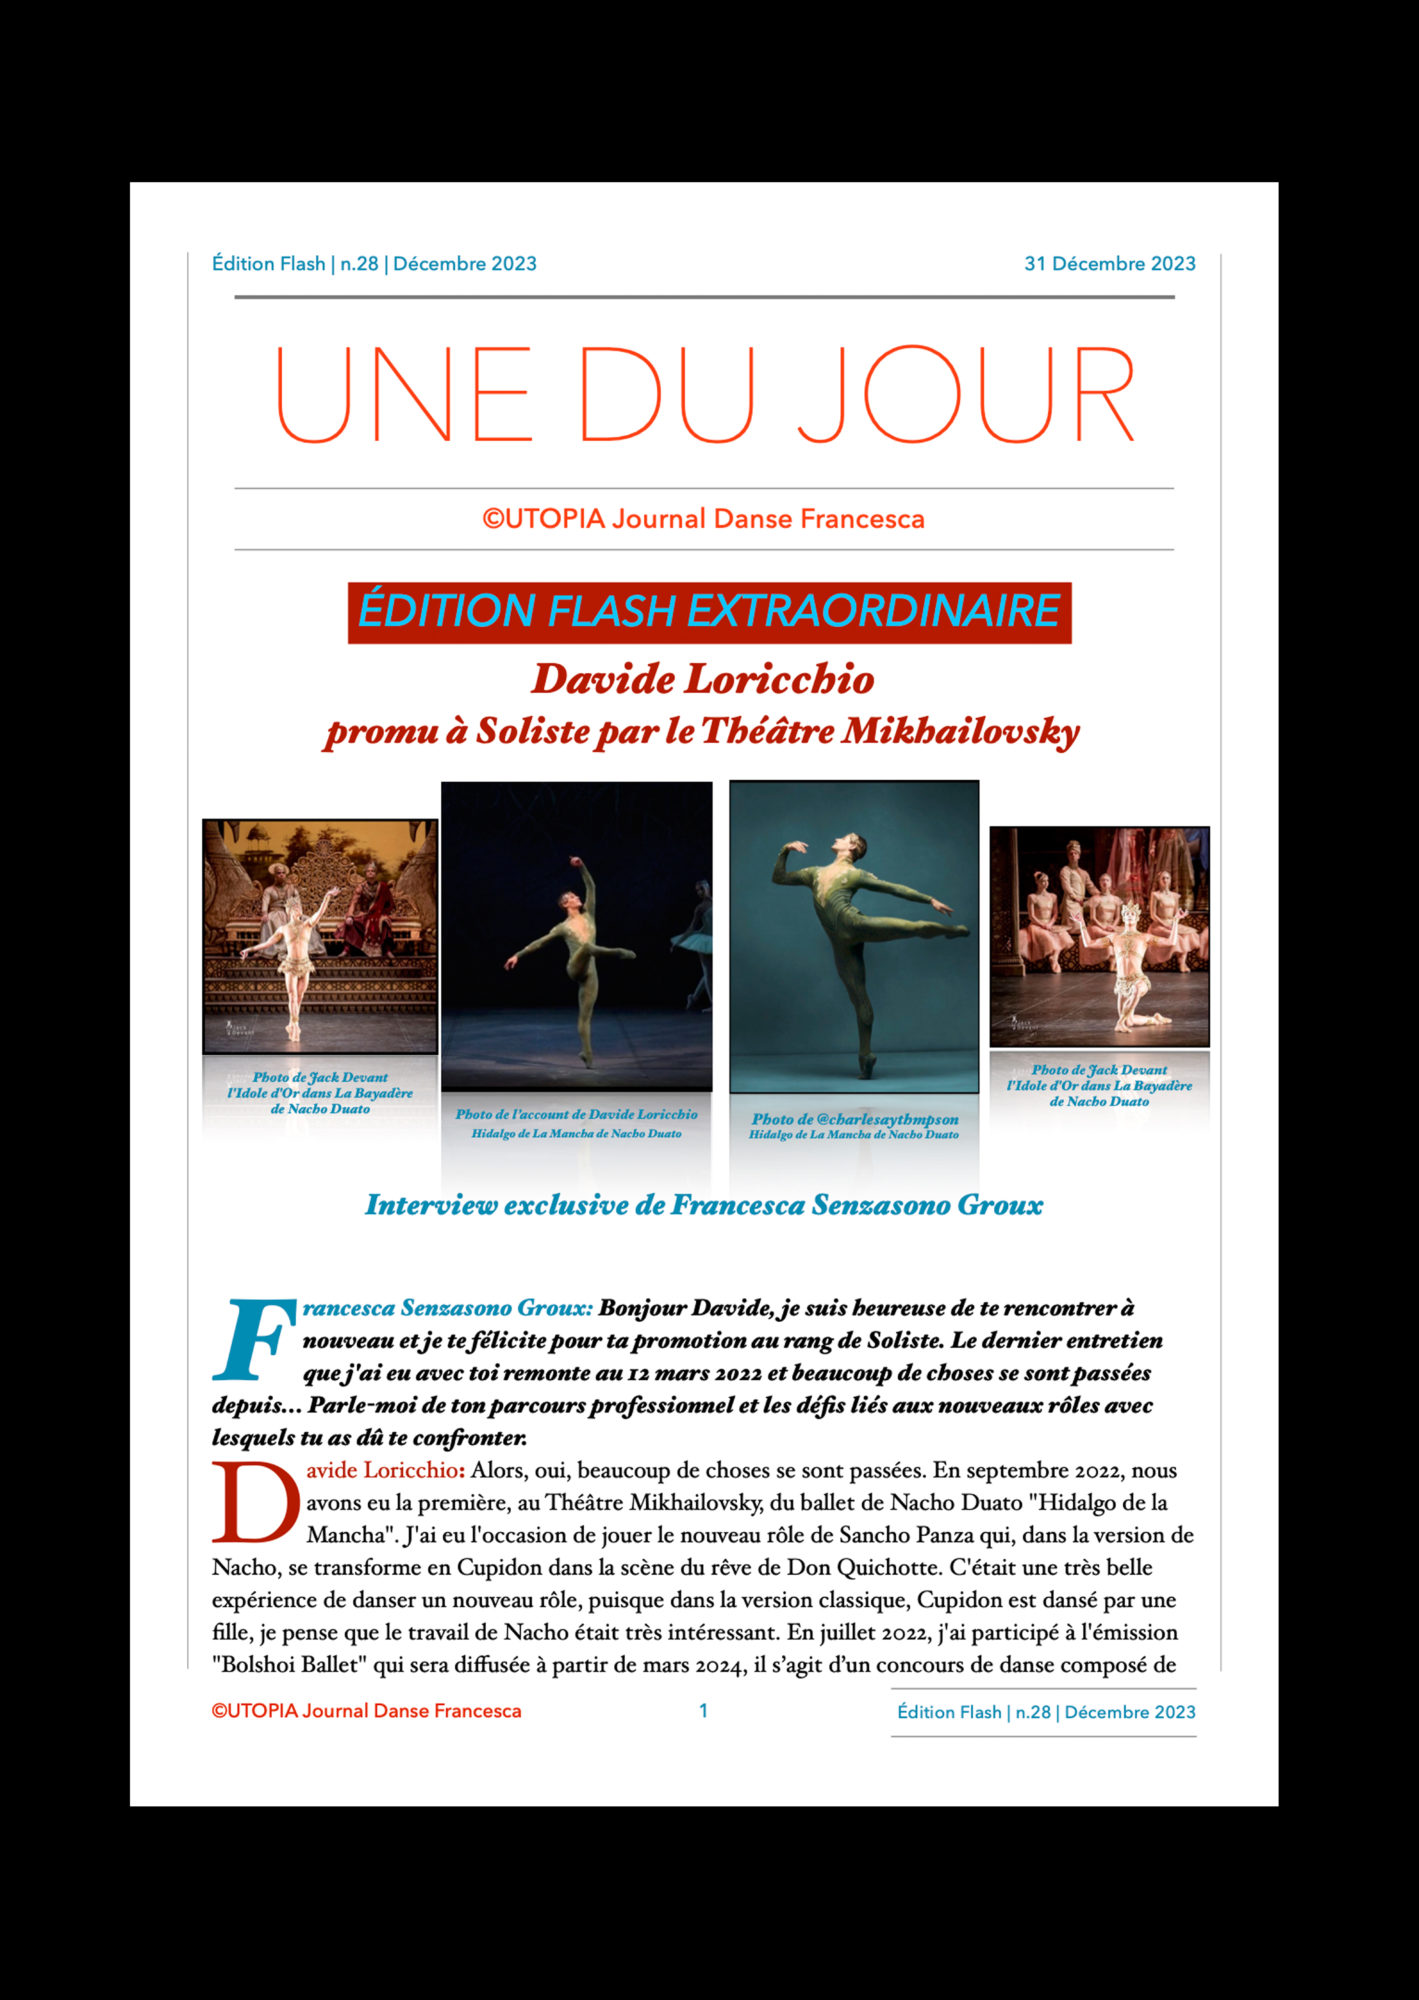 ©UTOPIA Journal Danse Francesca Edition Flash Extraordinaire n.28 31 Décembre 2023 page 1